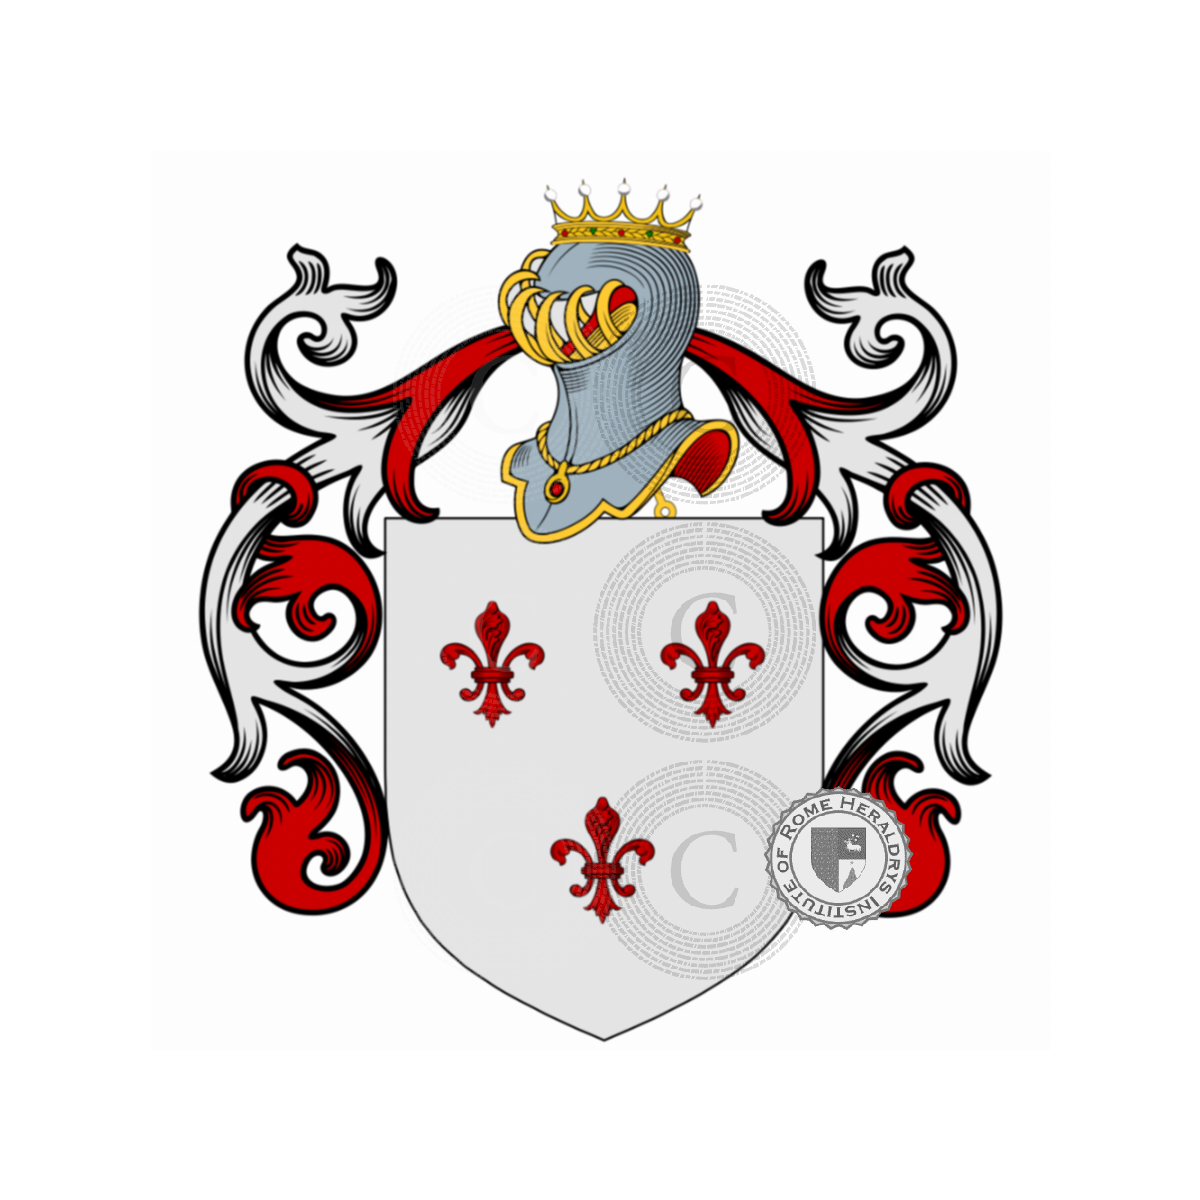 Escudo de la familiaOnoradi, Onorai,Onorati